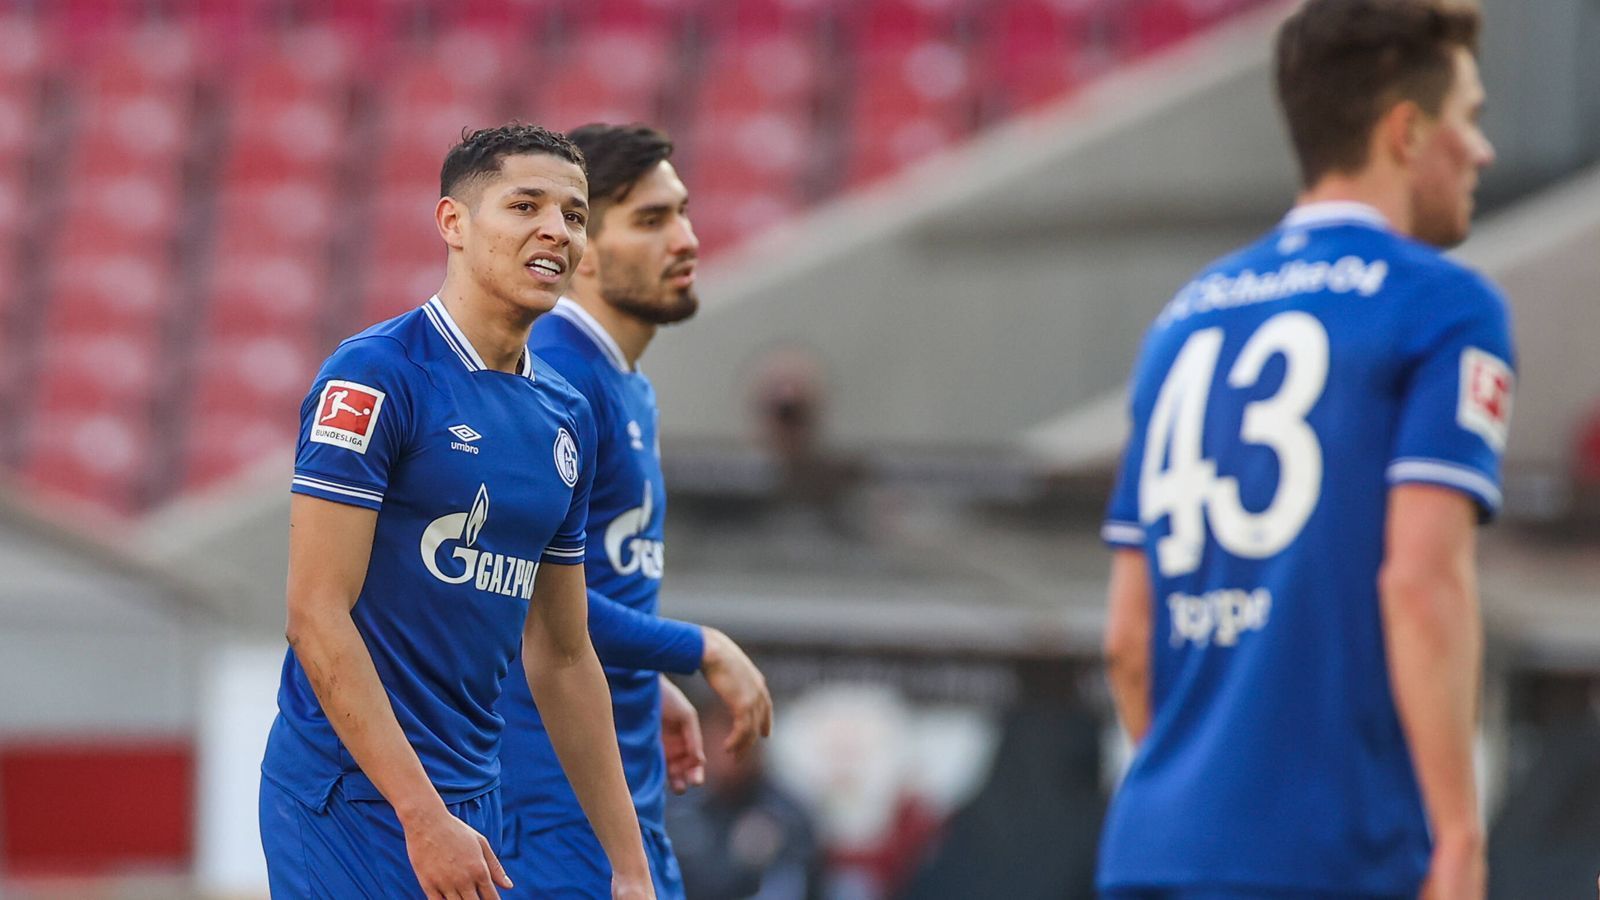 
                <strong>Warum hat Schalke so reagiert? </strong><br>
                Es war natürlich nicht nur das 1:5 beim VfB Stuttgart, sondern der anhaltende Absturz der vergangenen Monate. Eine wirkliche sportliche Besserung trat auch nach einschneidenden Änderungen nicht ein, weshalb nun noch tiefer geschnitten wurde.
              